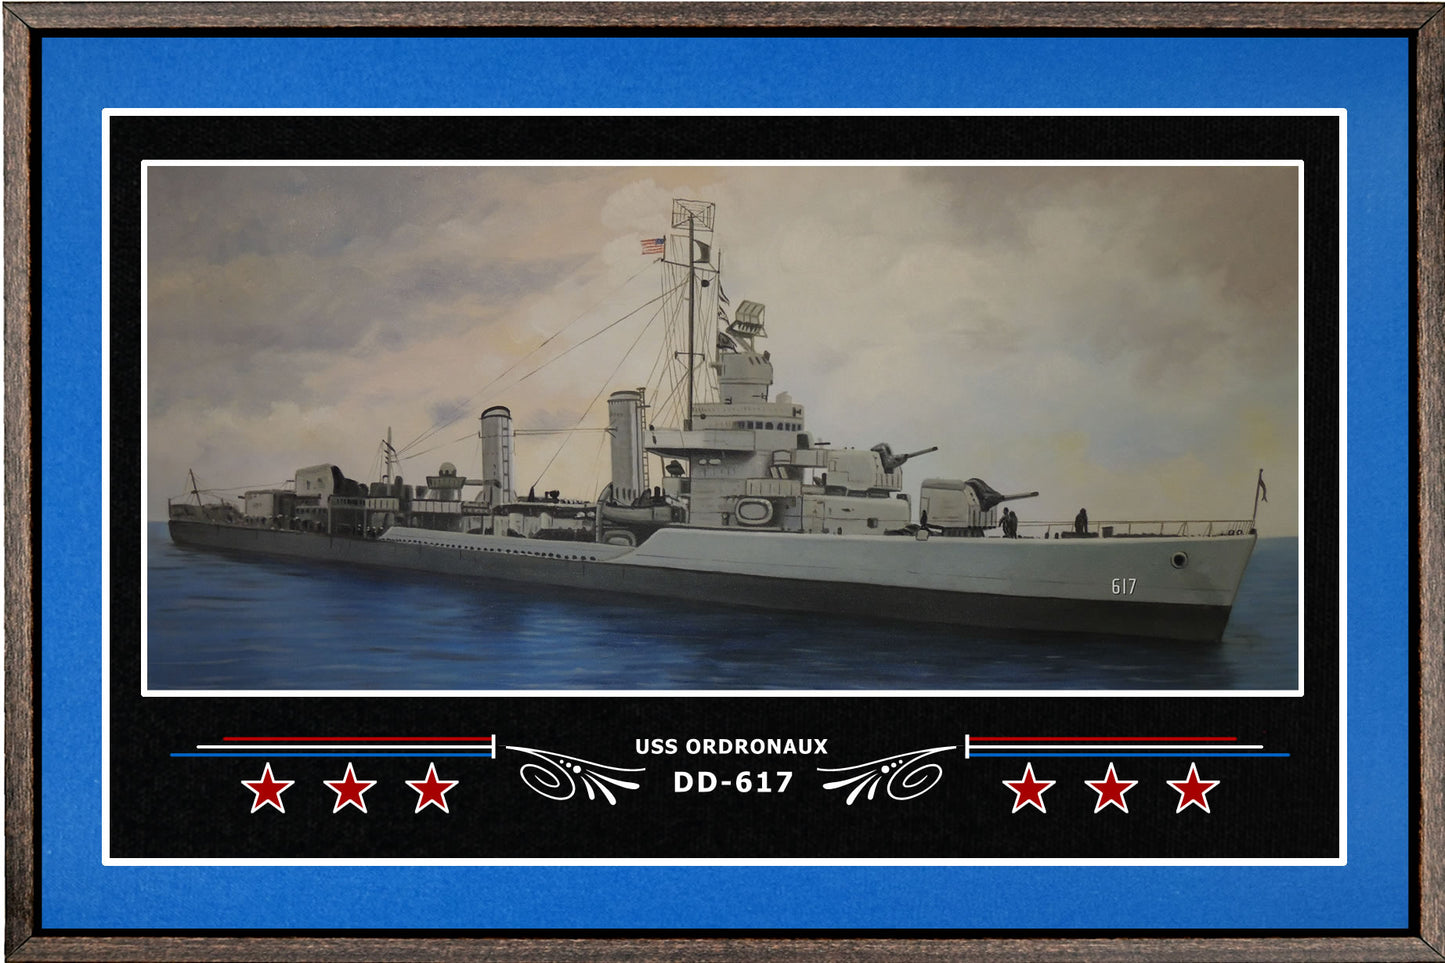 USS ORDRONAUX DD 617 BOX FRAMED CANVAS ART BLUE